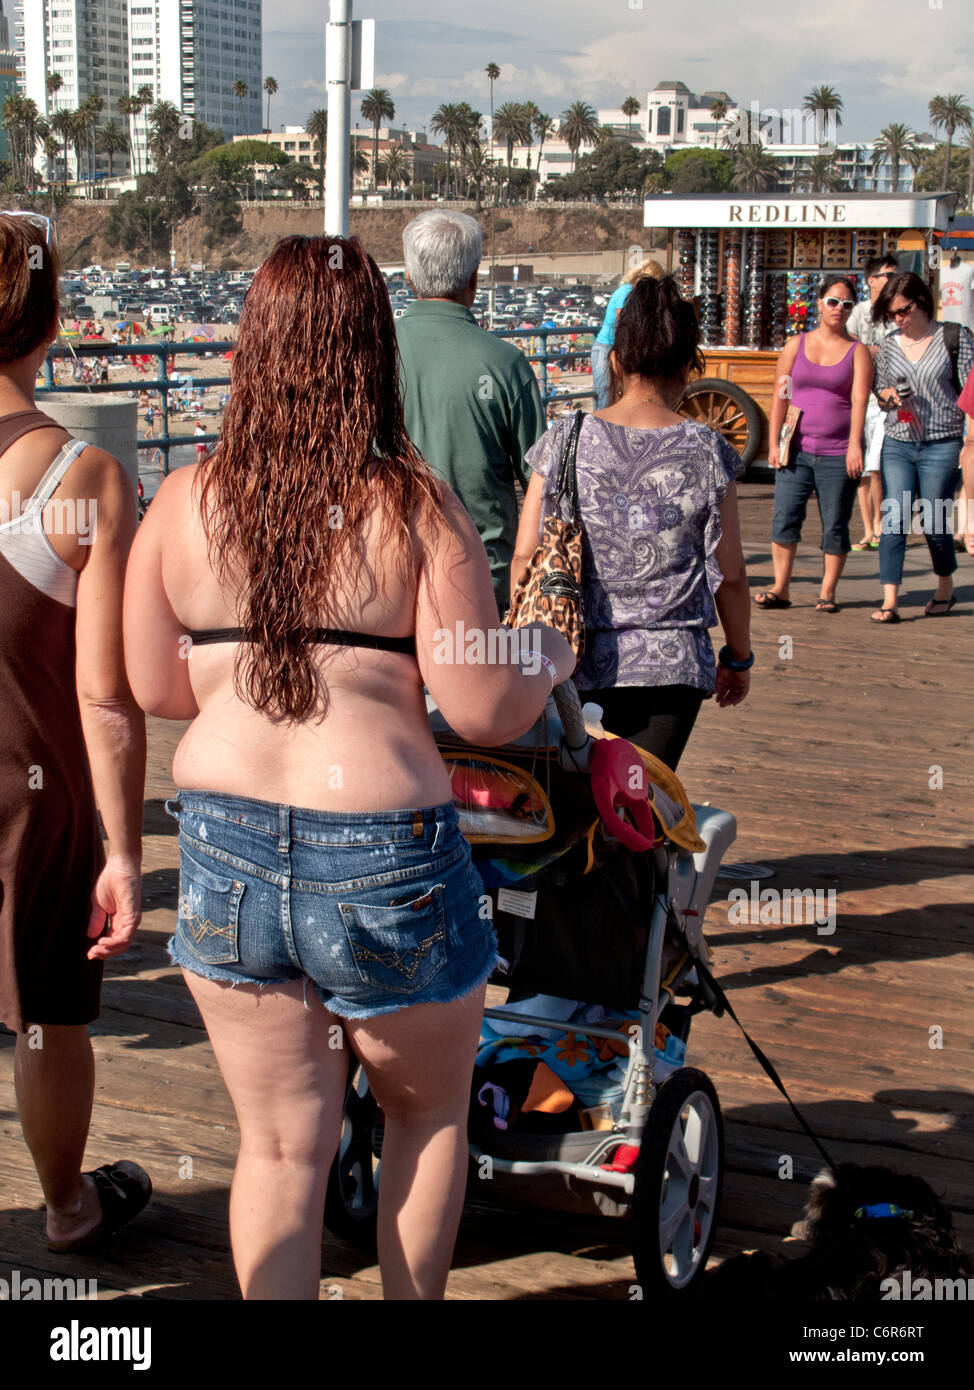 Klar komfortabel und nicht peinlich, eine übergewichtige Frau in einem  Bikini-Oberteil schiebt einen Kinderwagen am Santa Monica Pier  Stockfotografie - Alamy